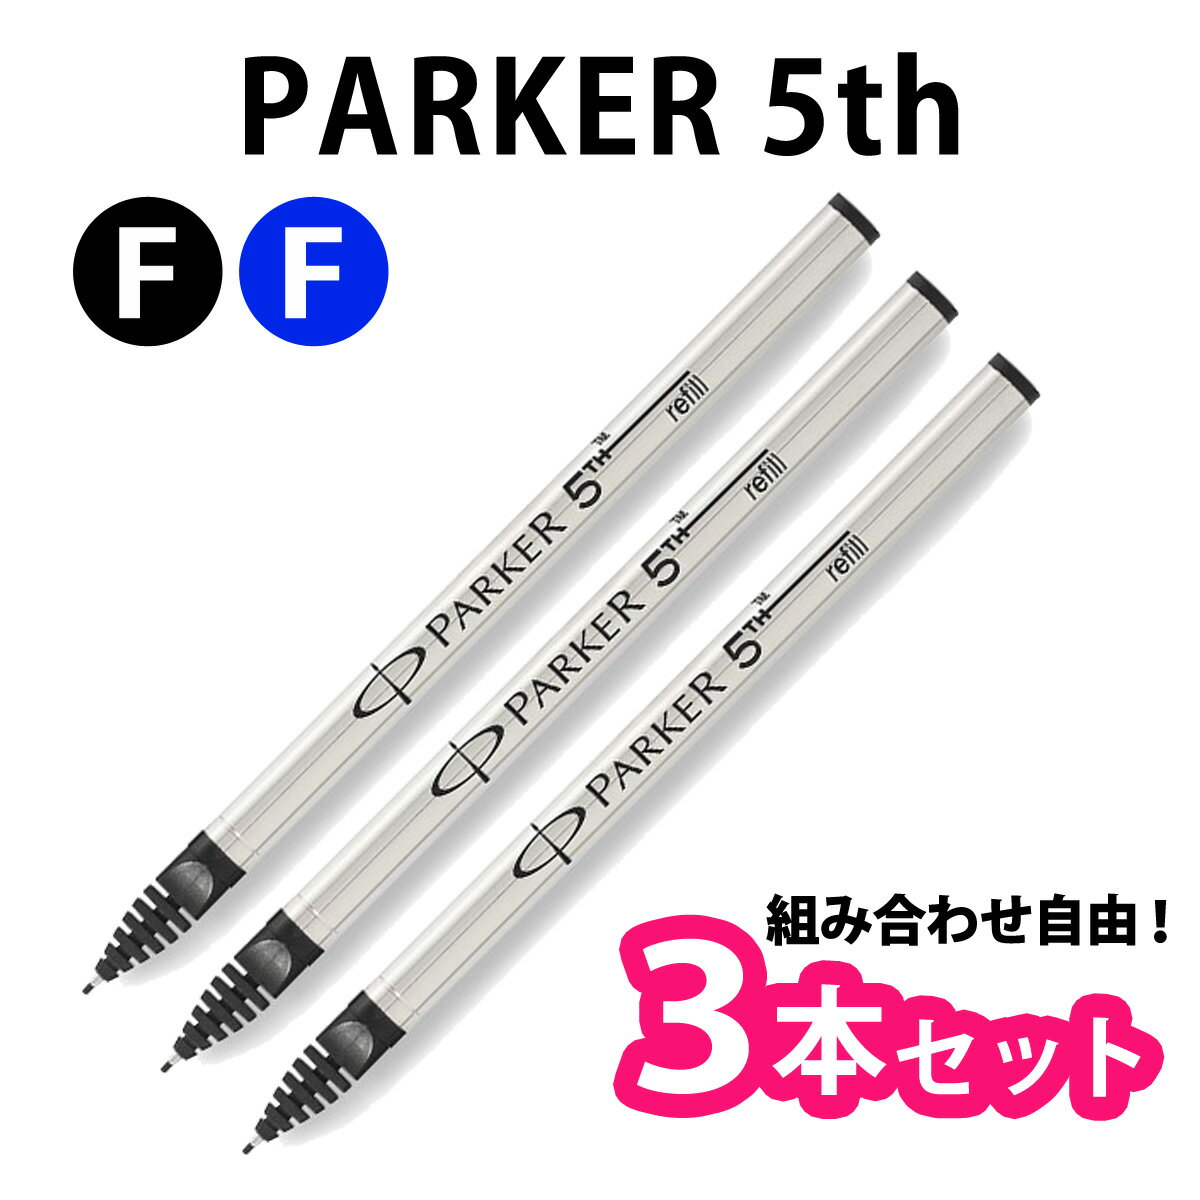 【選べる3本セット】 PARKER パーカー 5th 替え芯 リフィル 全2色 【メール便送料無料】 【RCP】